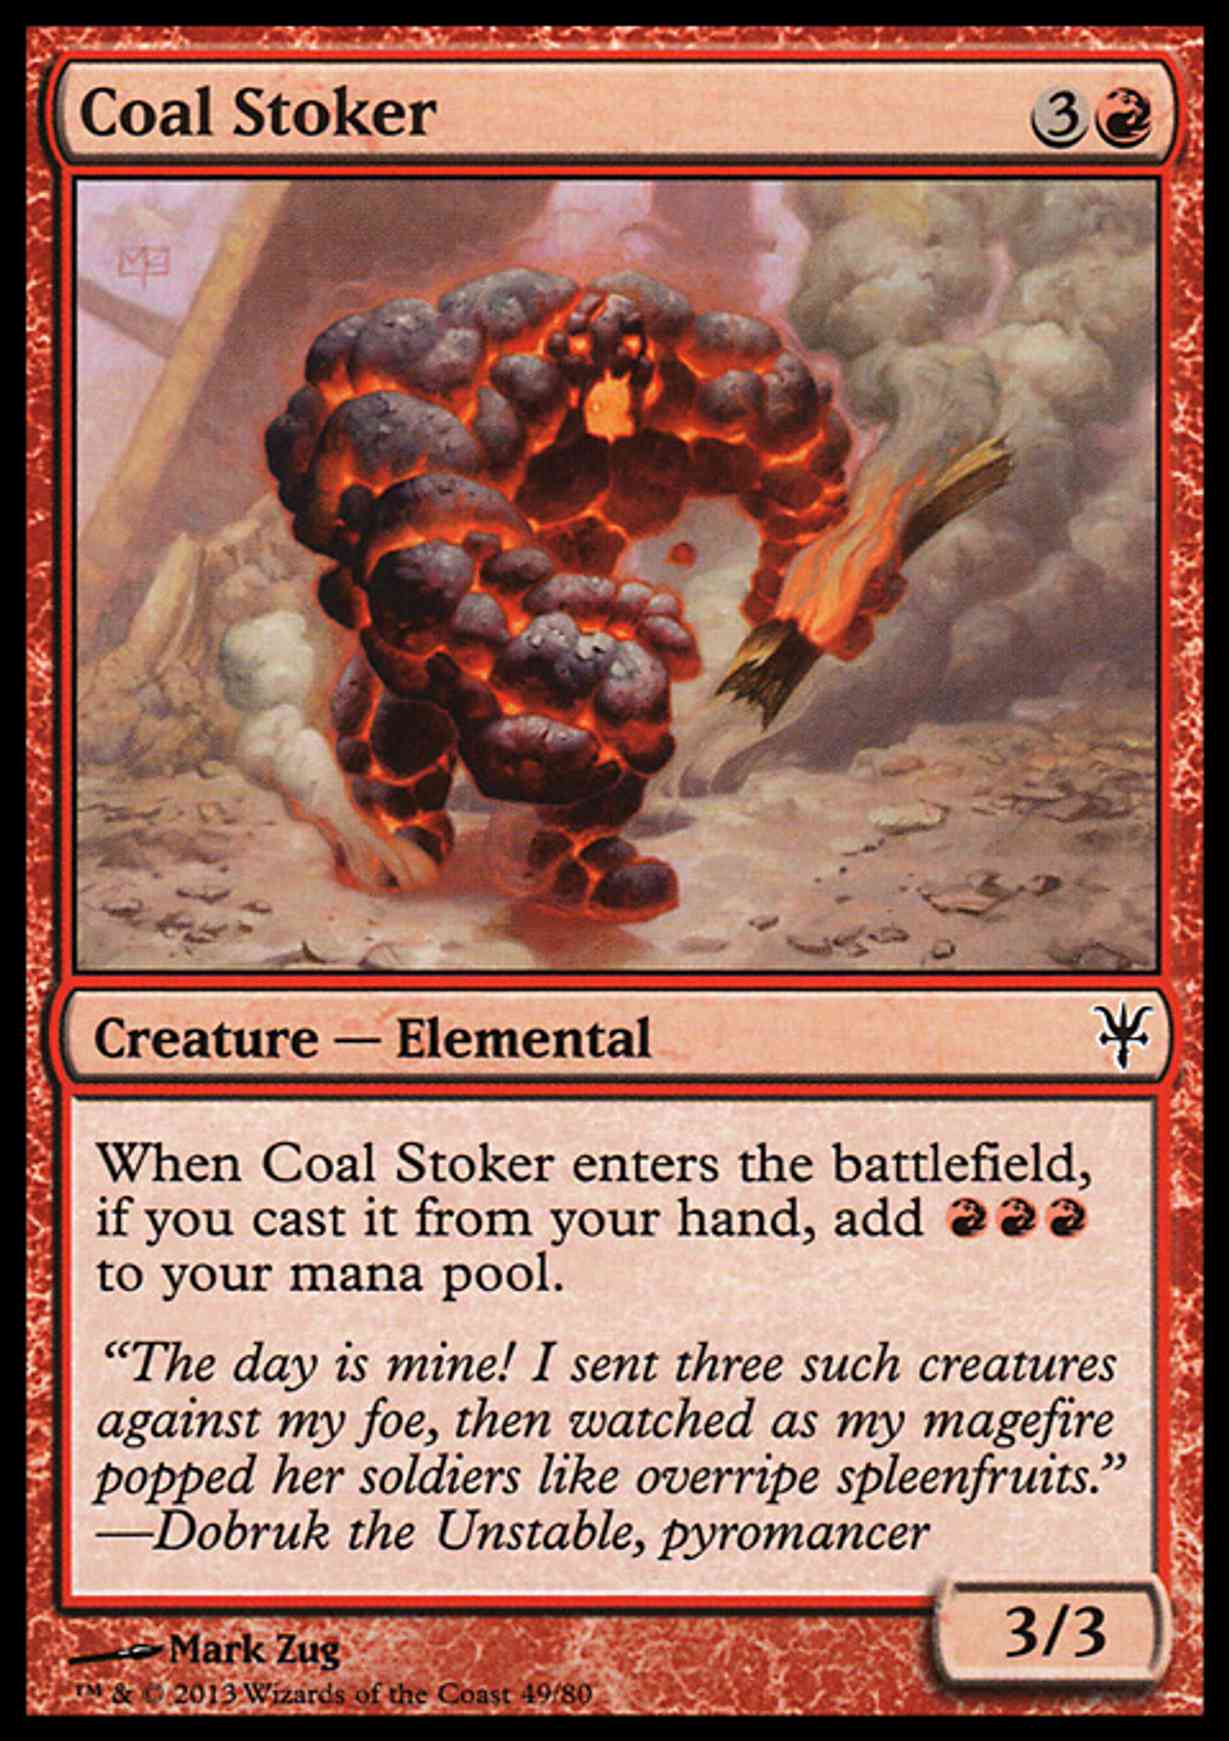 Coal Stoker magic card front